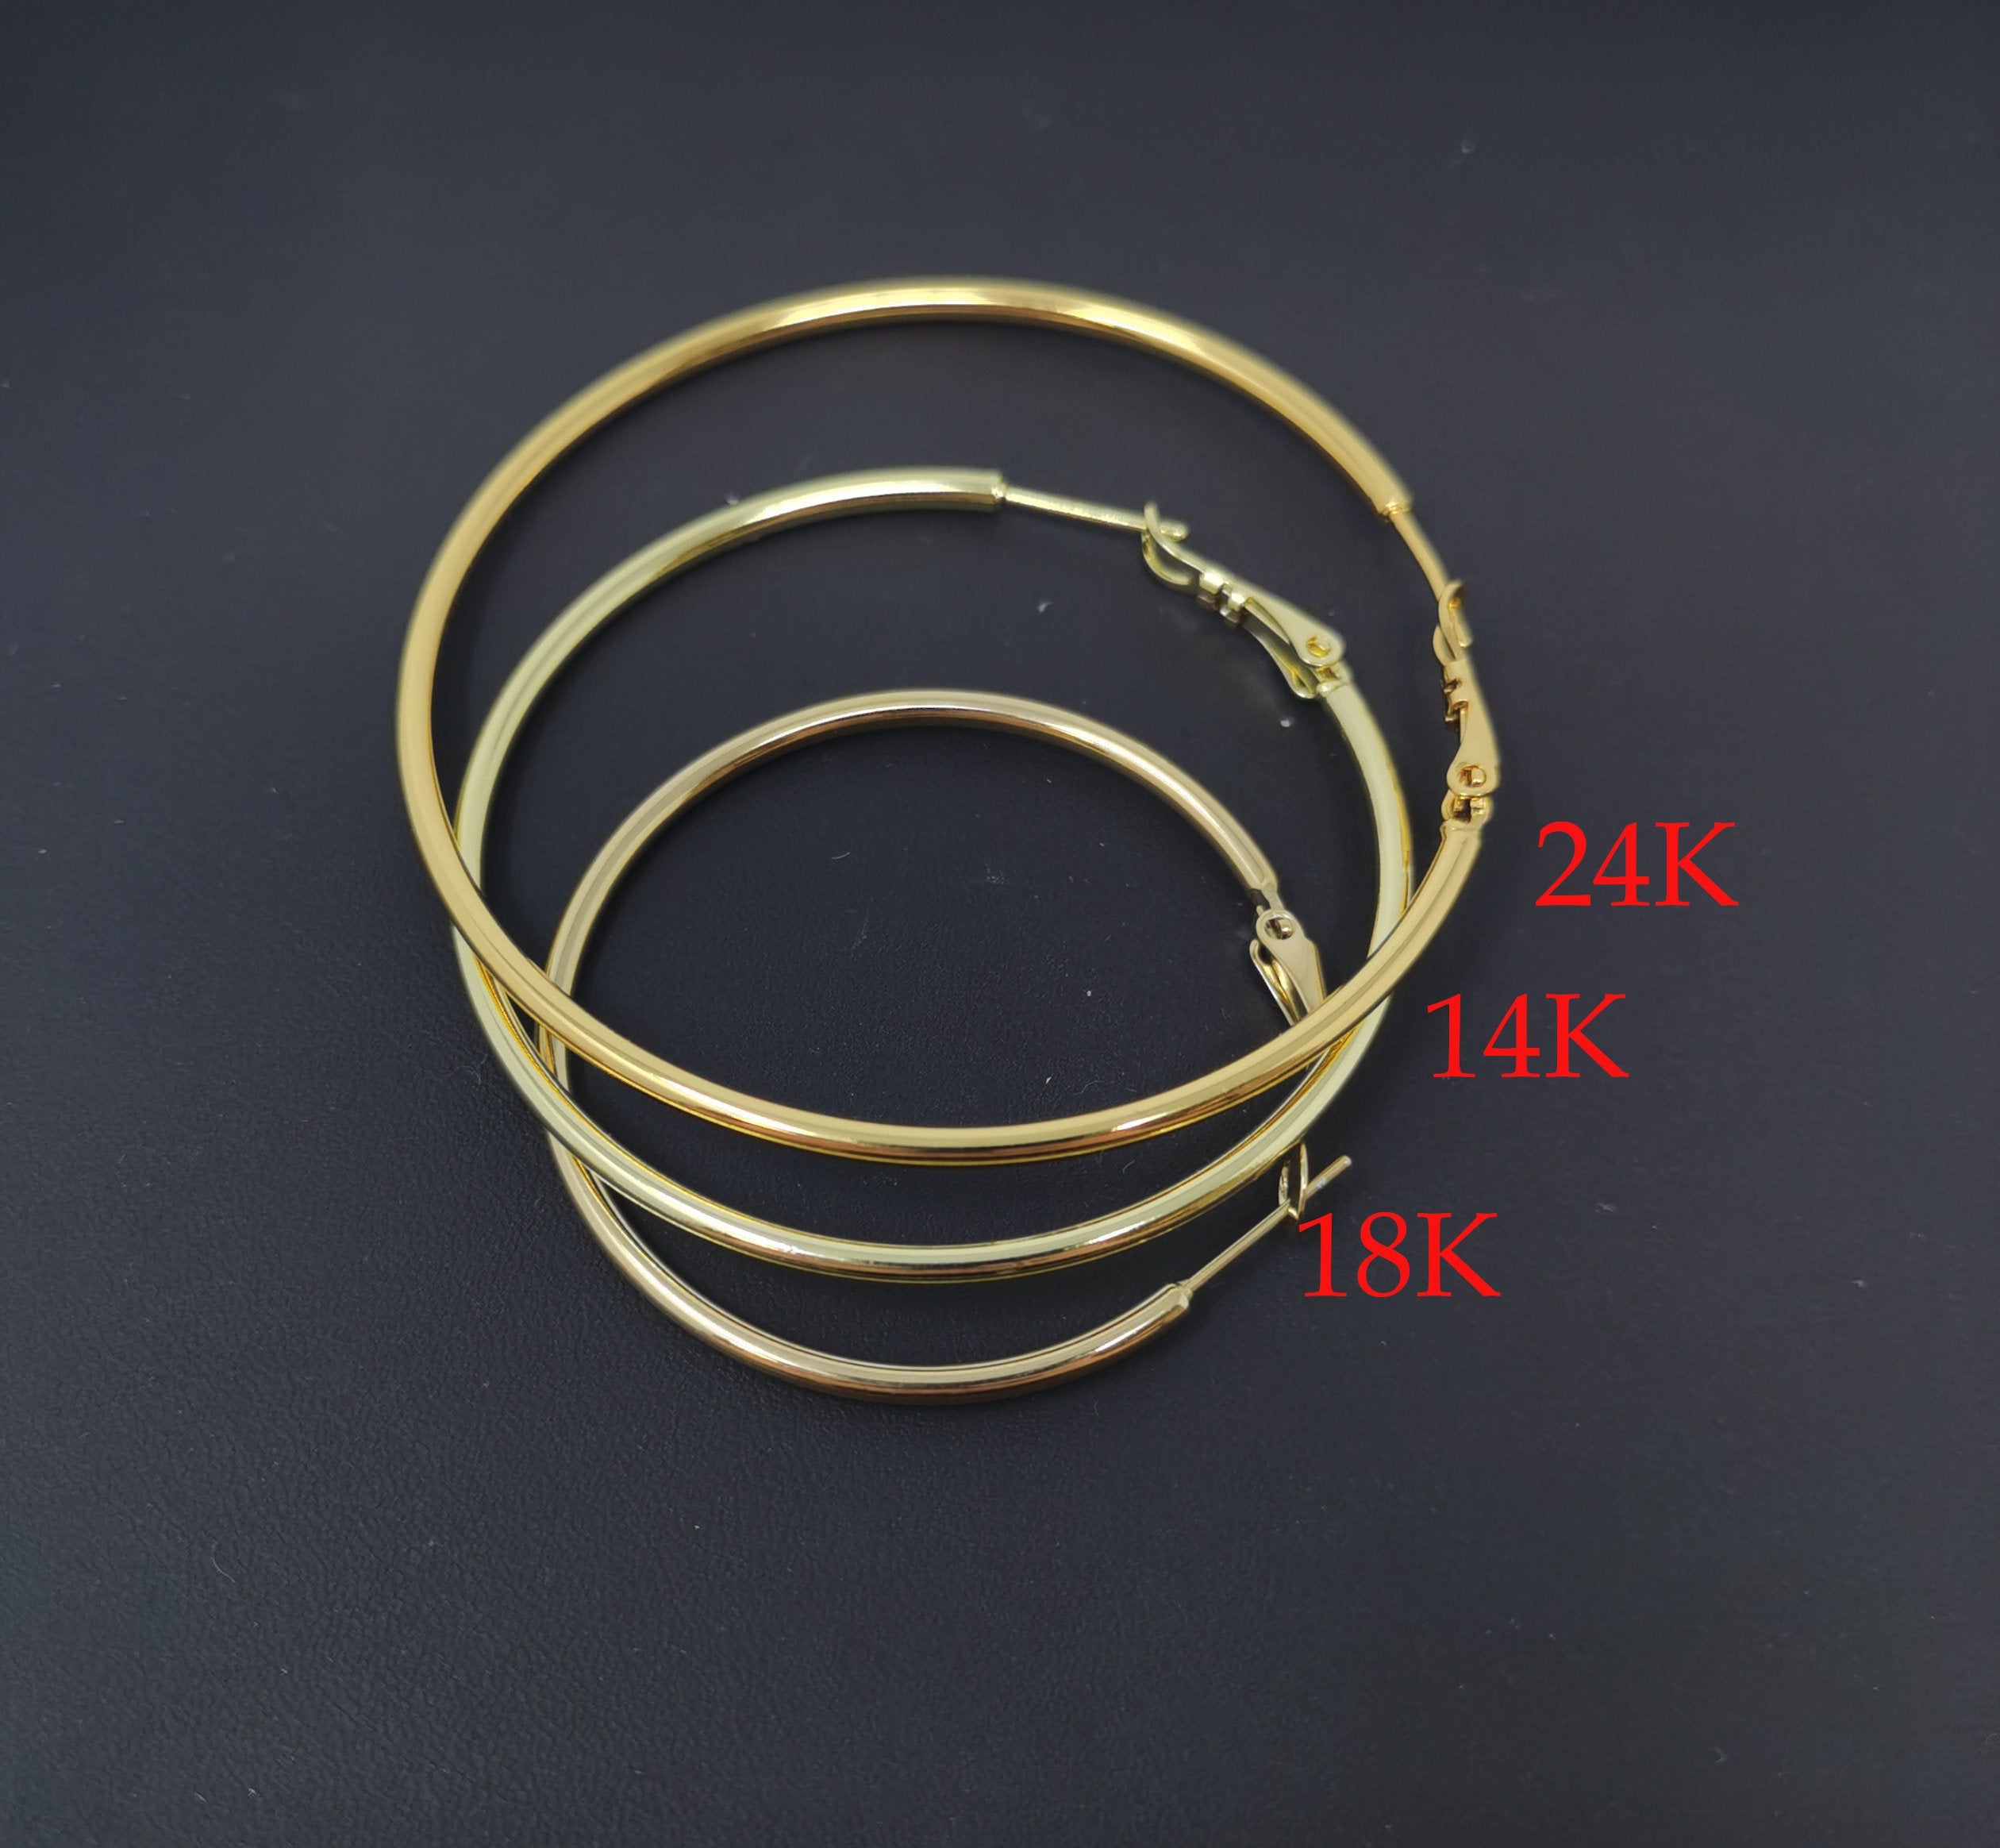 Gold Hoop Earring, 14K Gold Filled Hoop Earring One Pair Hoop Earring Sizes 30mm 35mm 40mm 50mm 60mm 70mm Every Day Hoop Earring Lightweight - DLUXCA